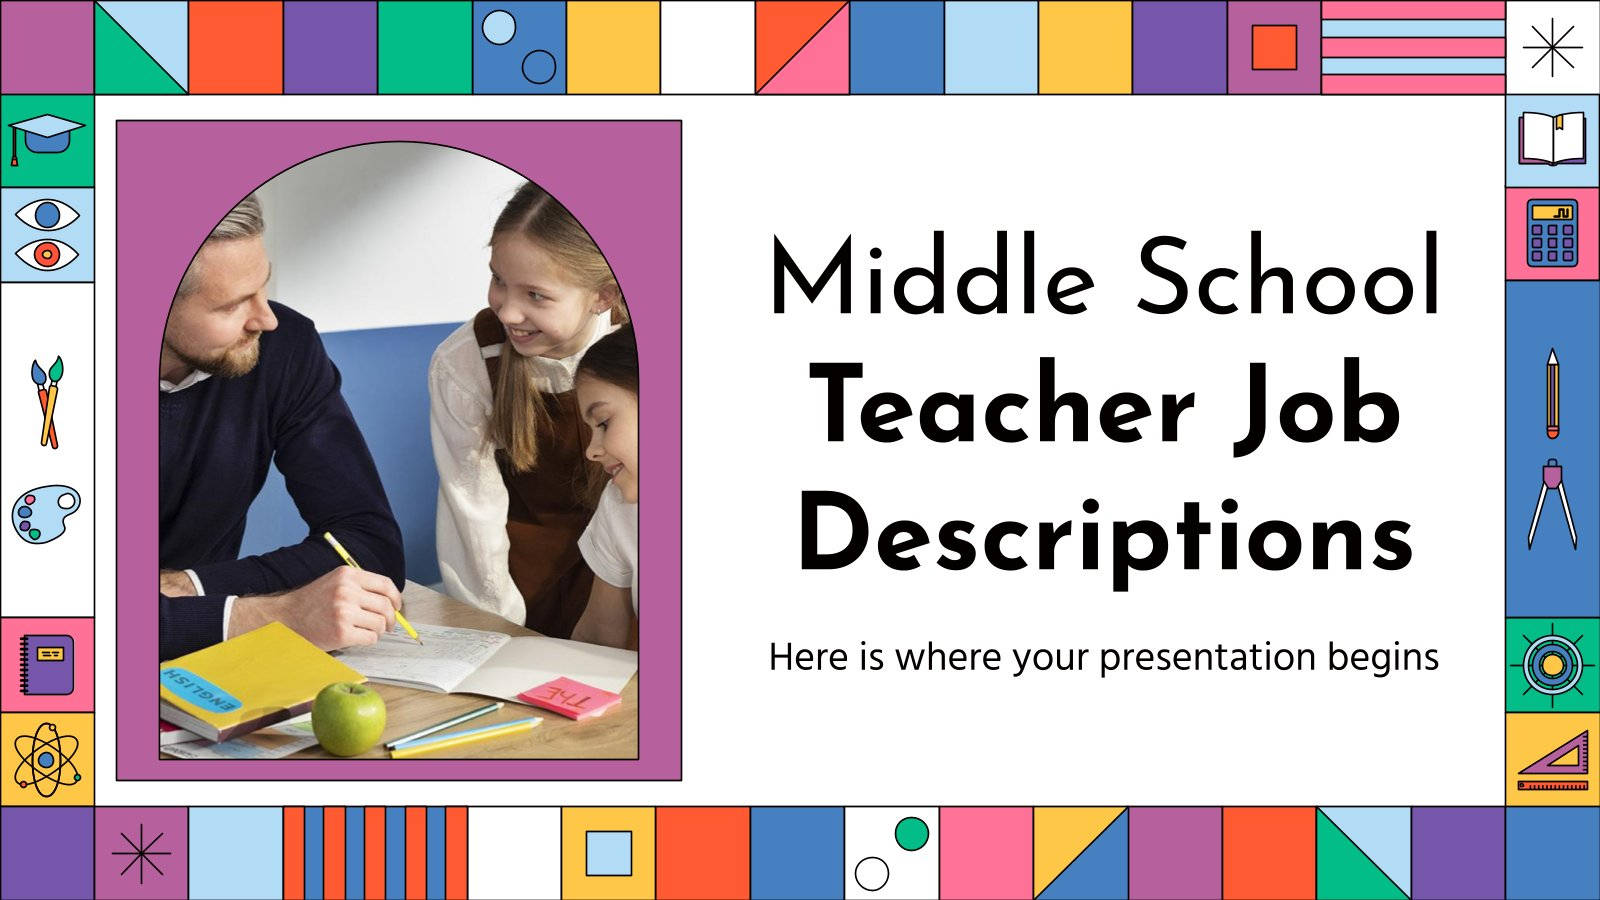 Middle School Teacher Job Descriptions Background